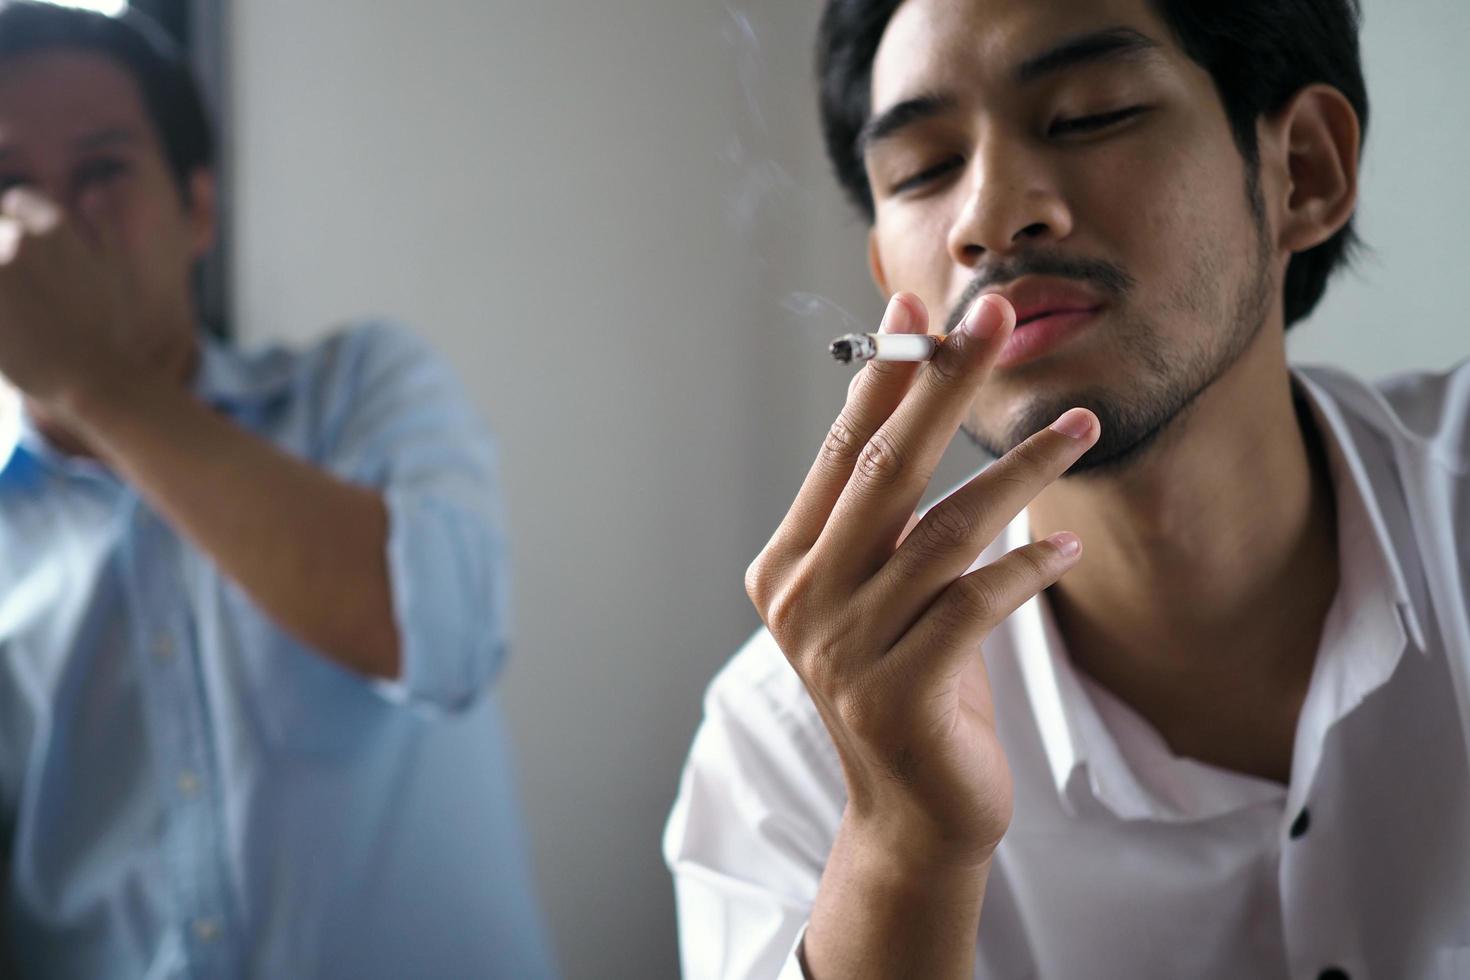 homem está fumando no escritório. colegas sentiram cheiro de cigarro e expressaram repulsa. foto